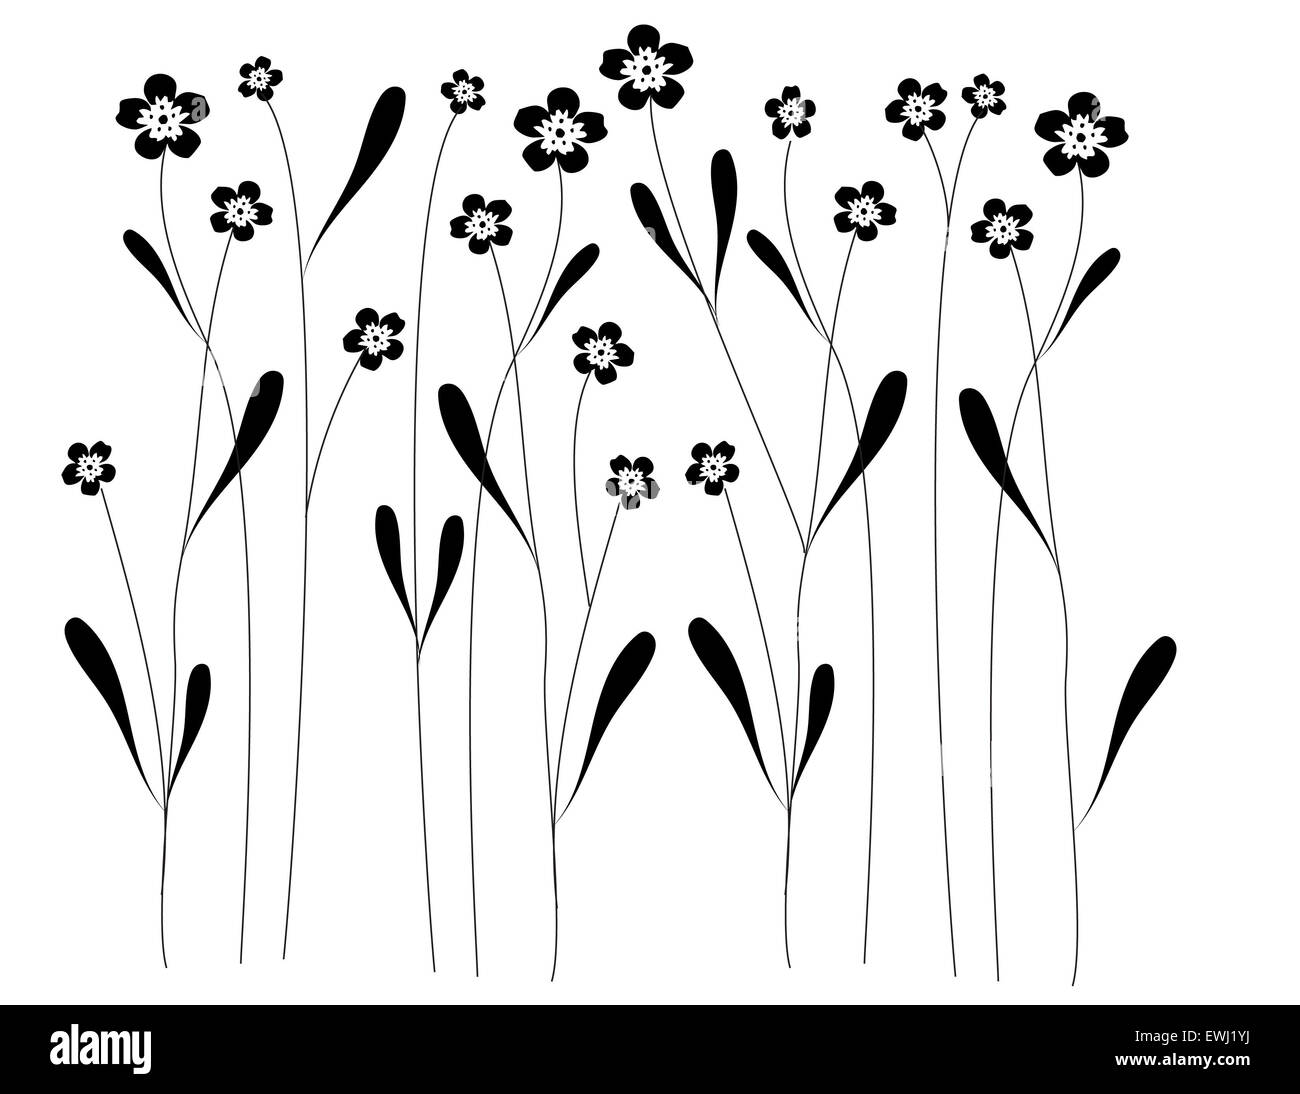 Illustrazione Digitale di fiori selvatici che crescono in una molla in bianco e nero Foto Stock